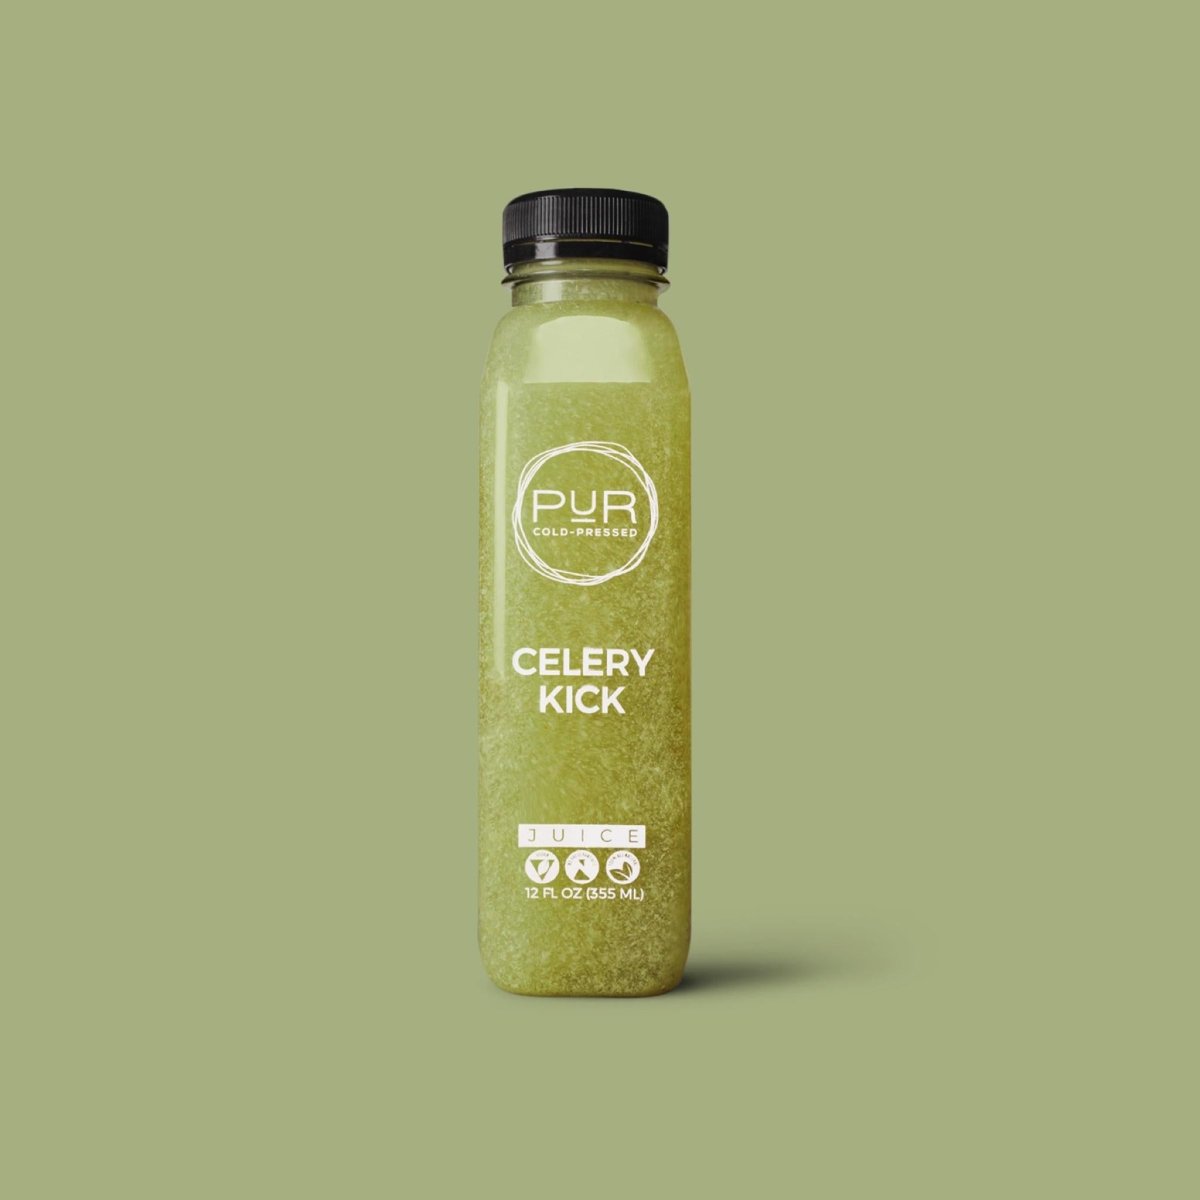 PUR juice cleanse cold pressed juice CELERY KICK Celery Juice Detox | Celery Kick Juice | PUR Individual Juice